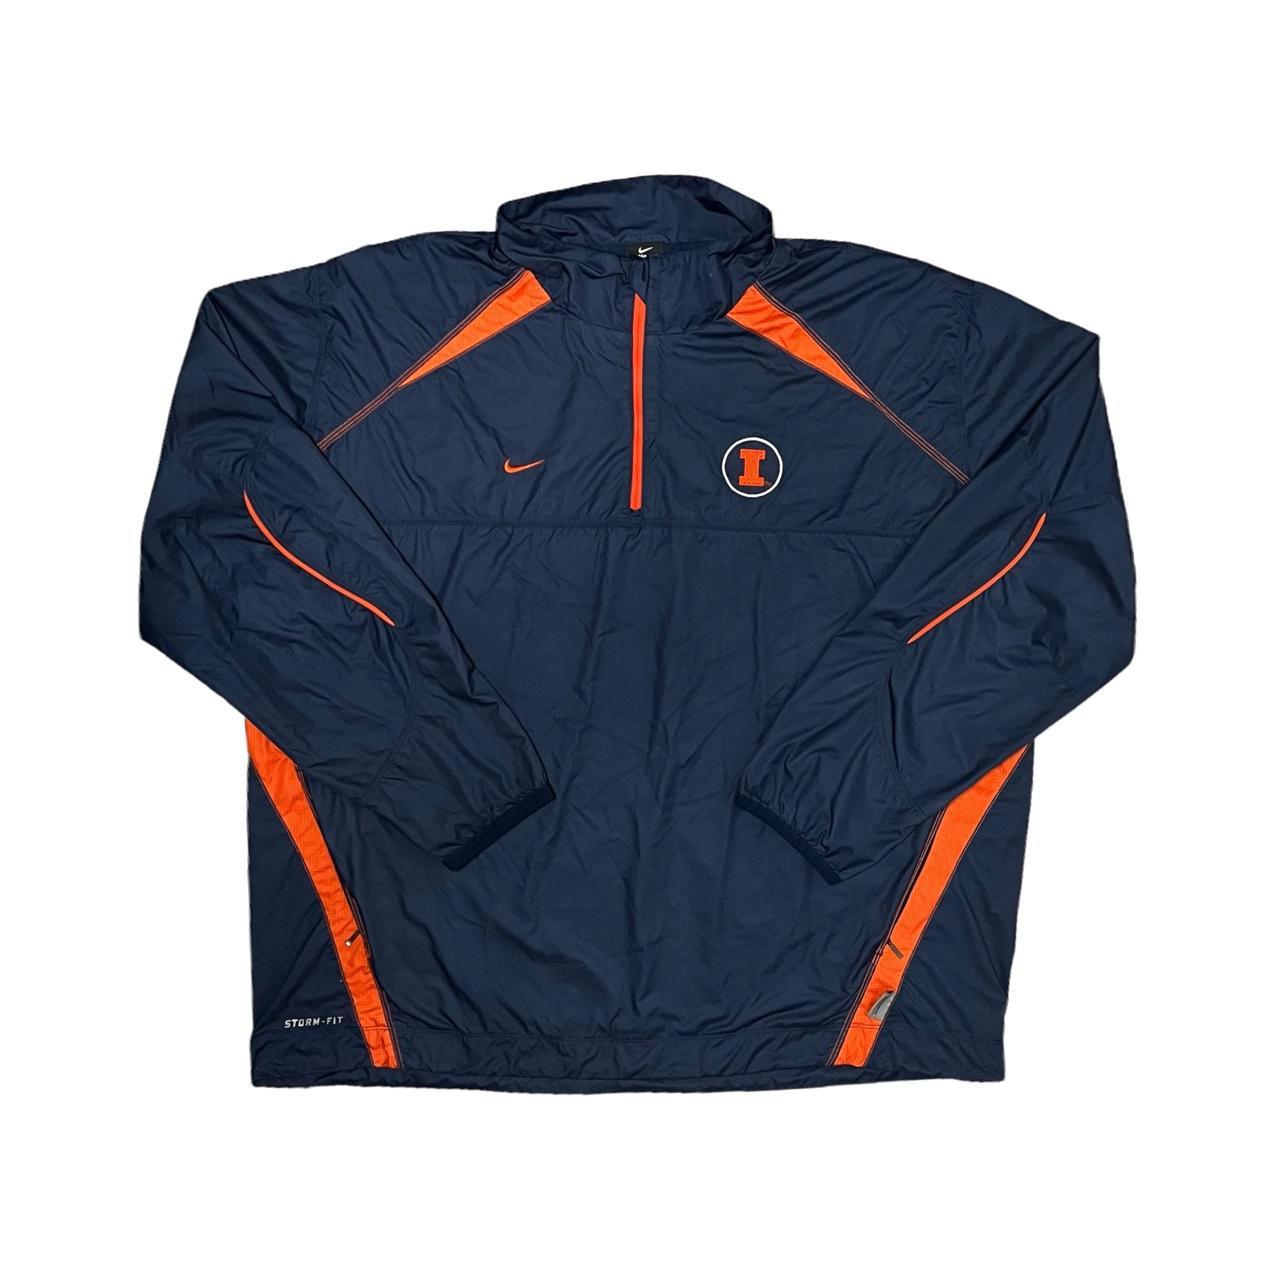 Nike Men's Navy and Orange Jacket